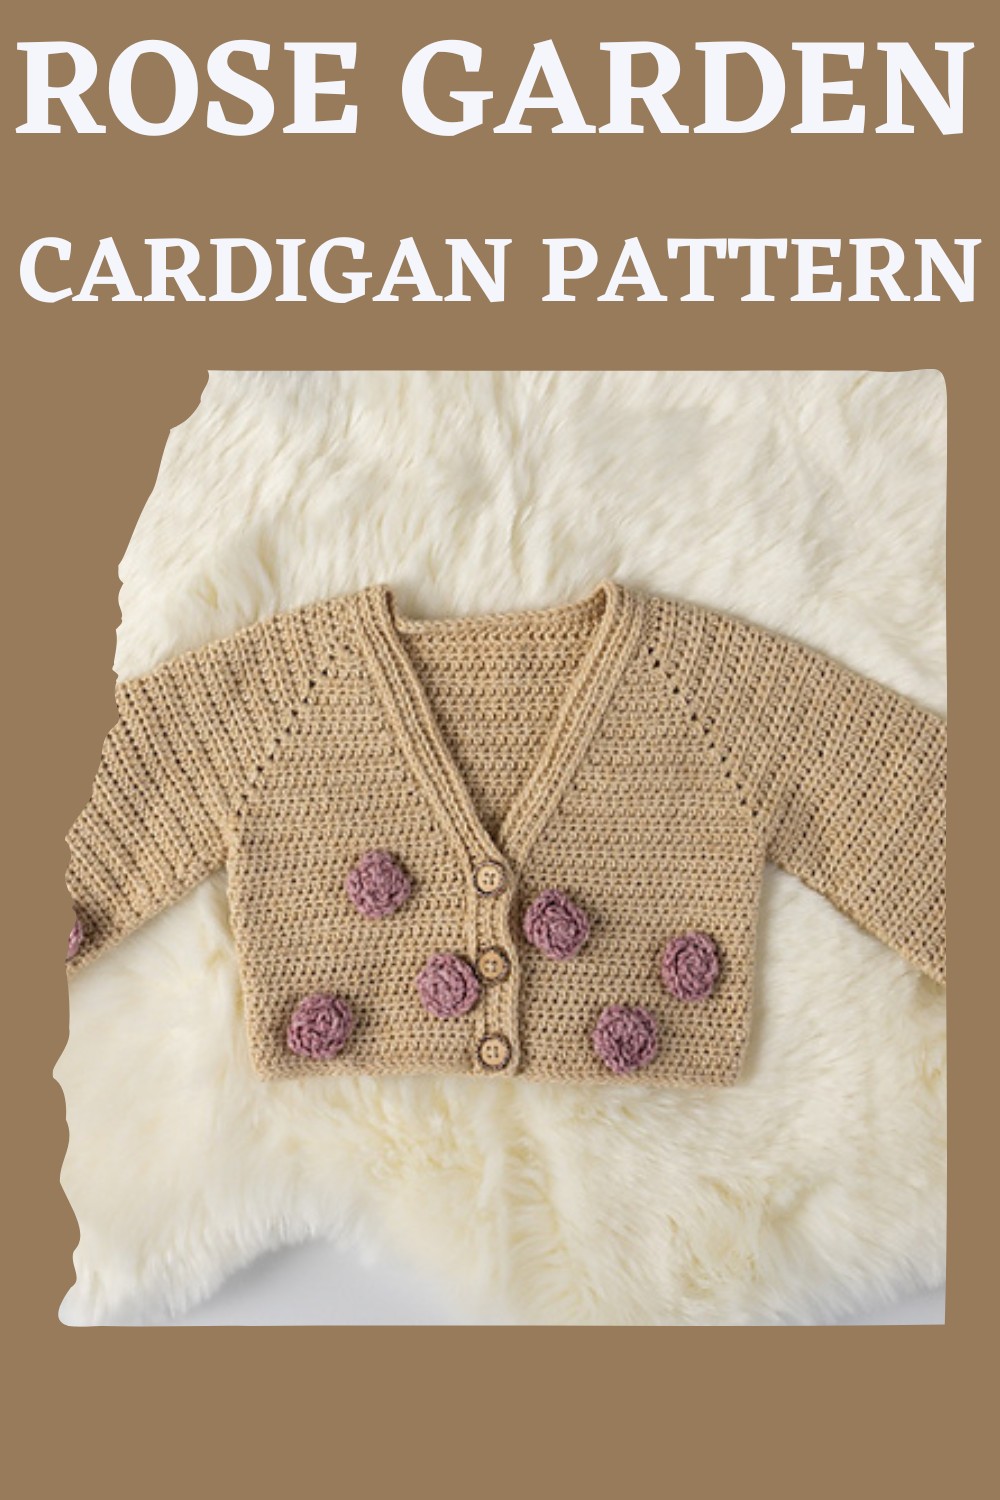 Rose Garden Cardigan Pattern